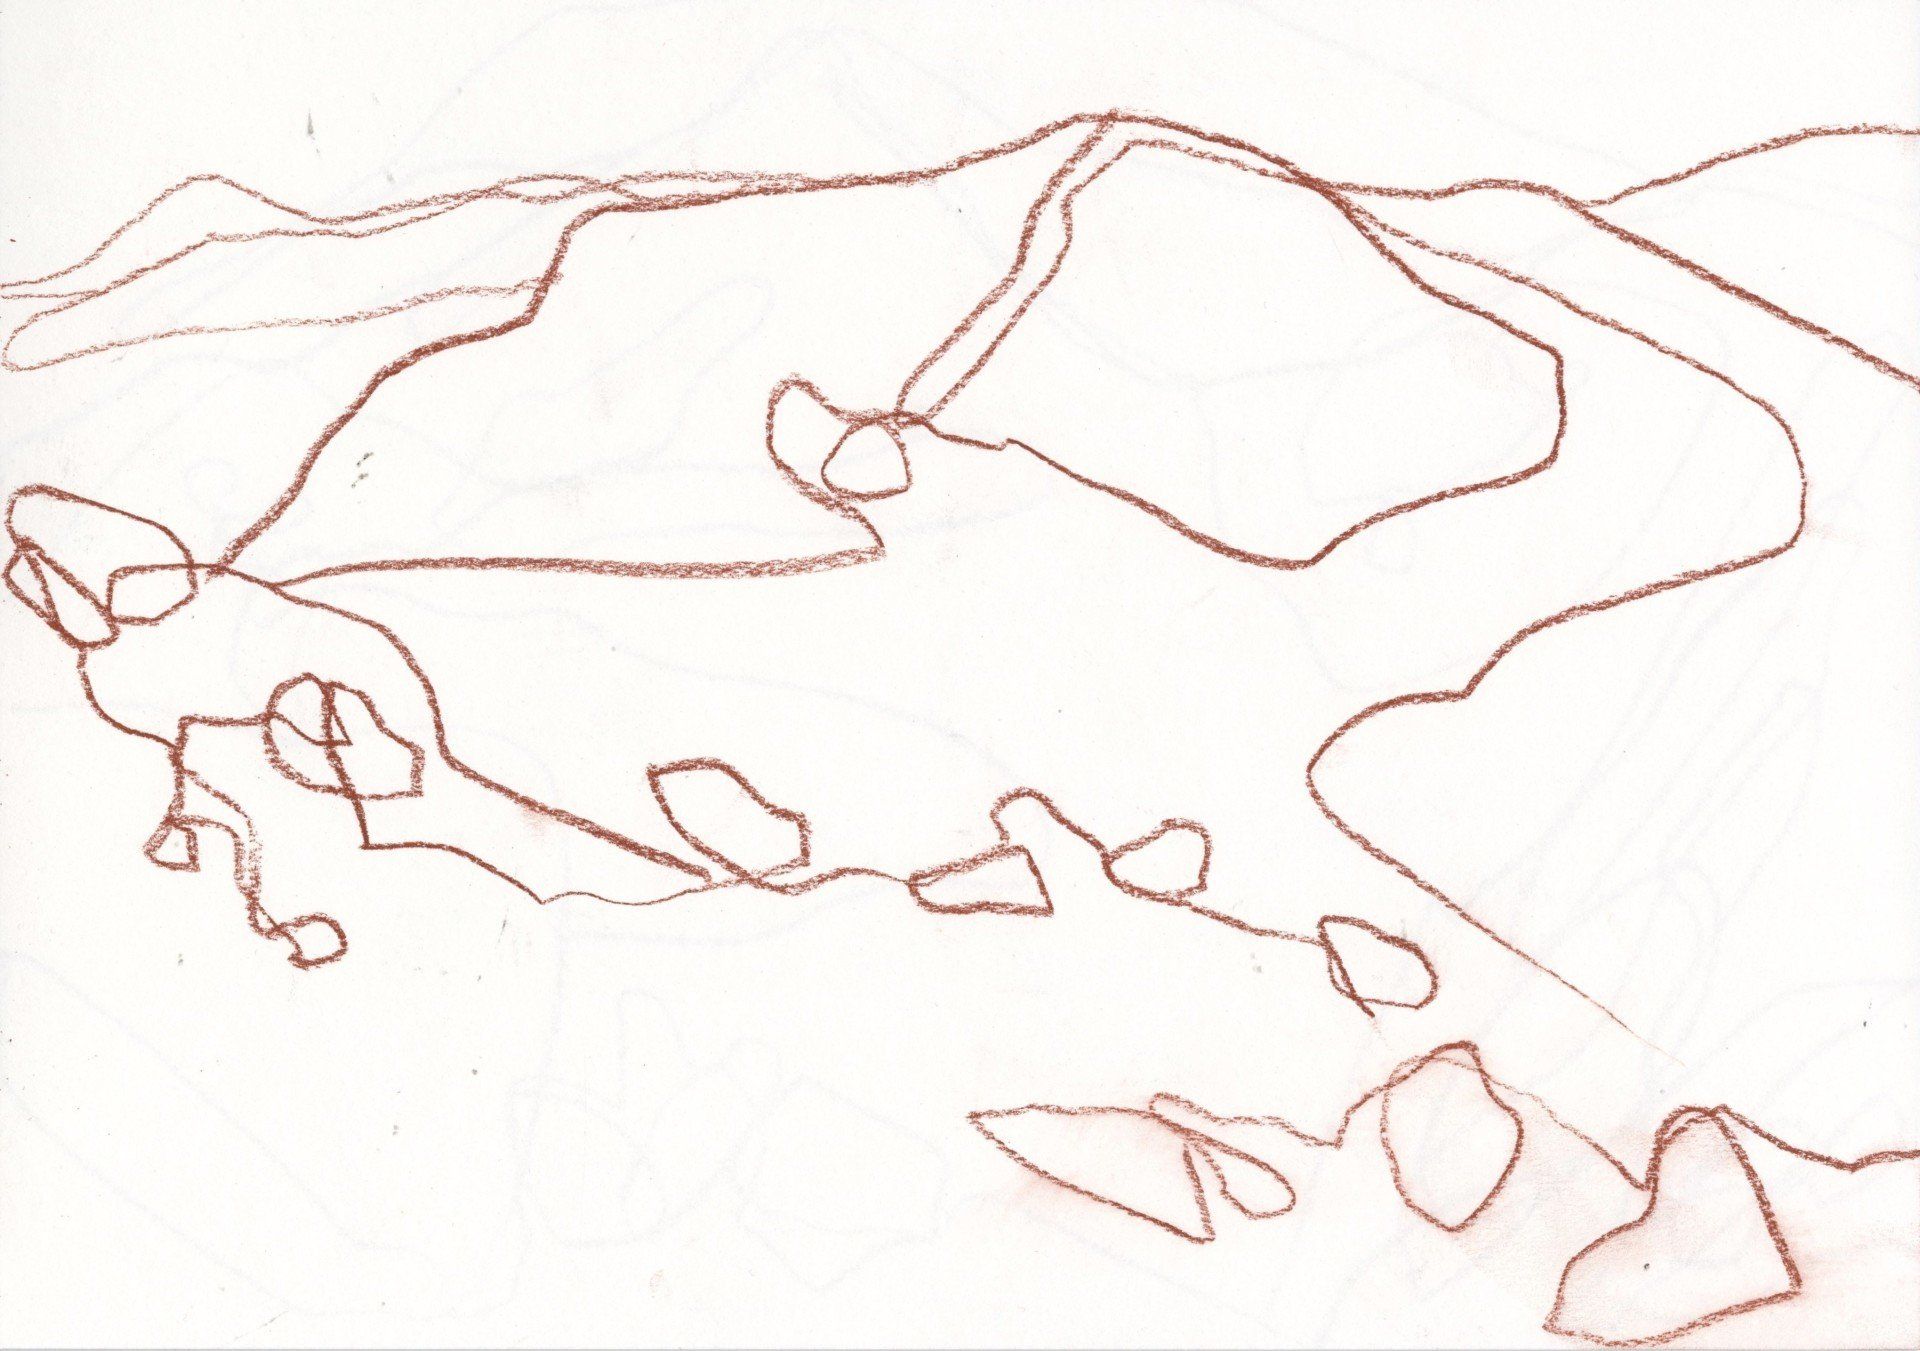 Line drawing of landscape in artist sketchbook